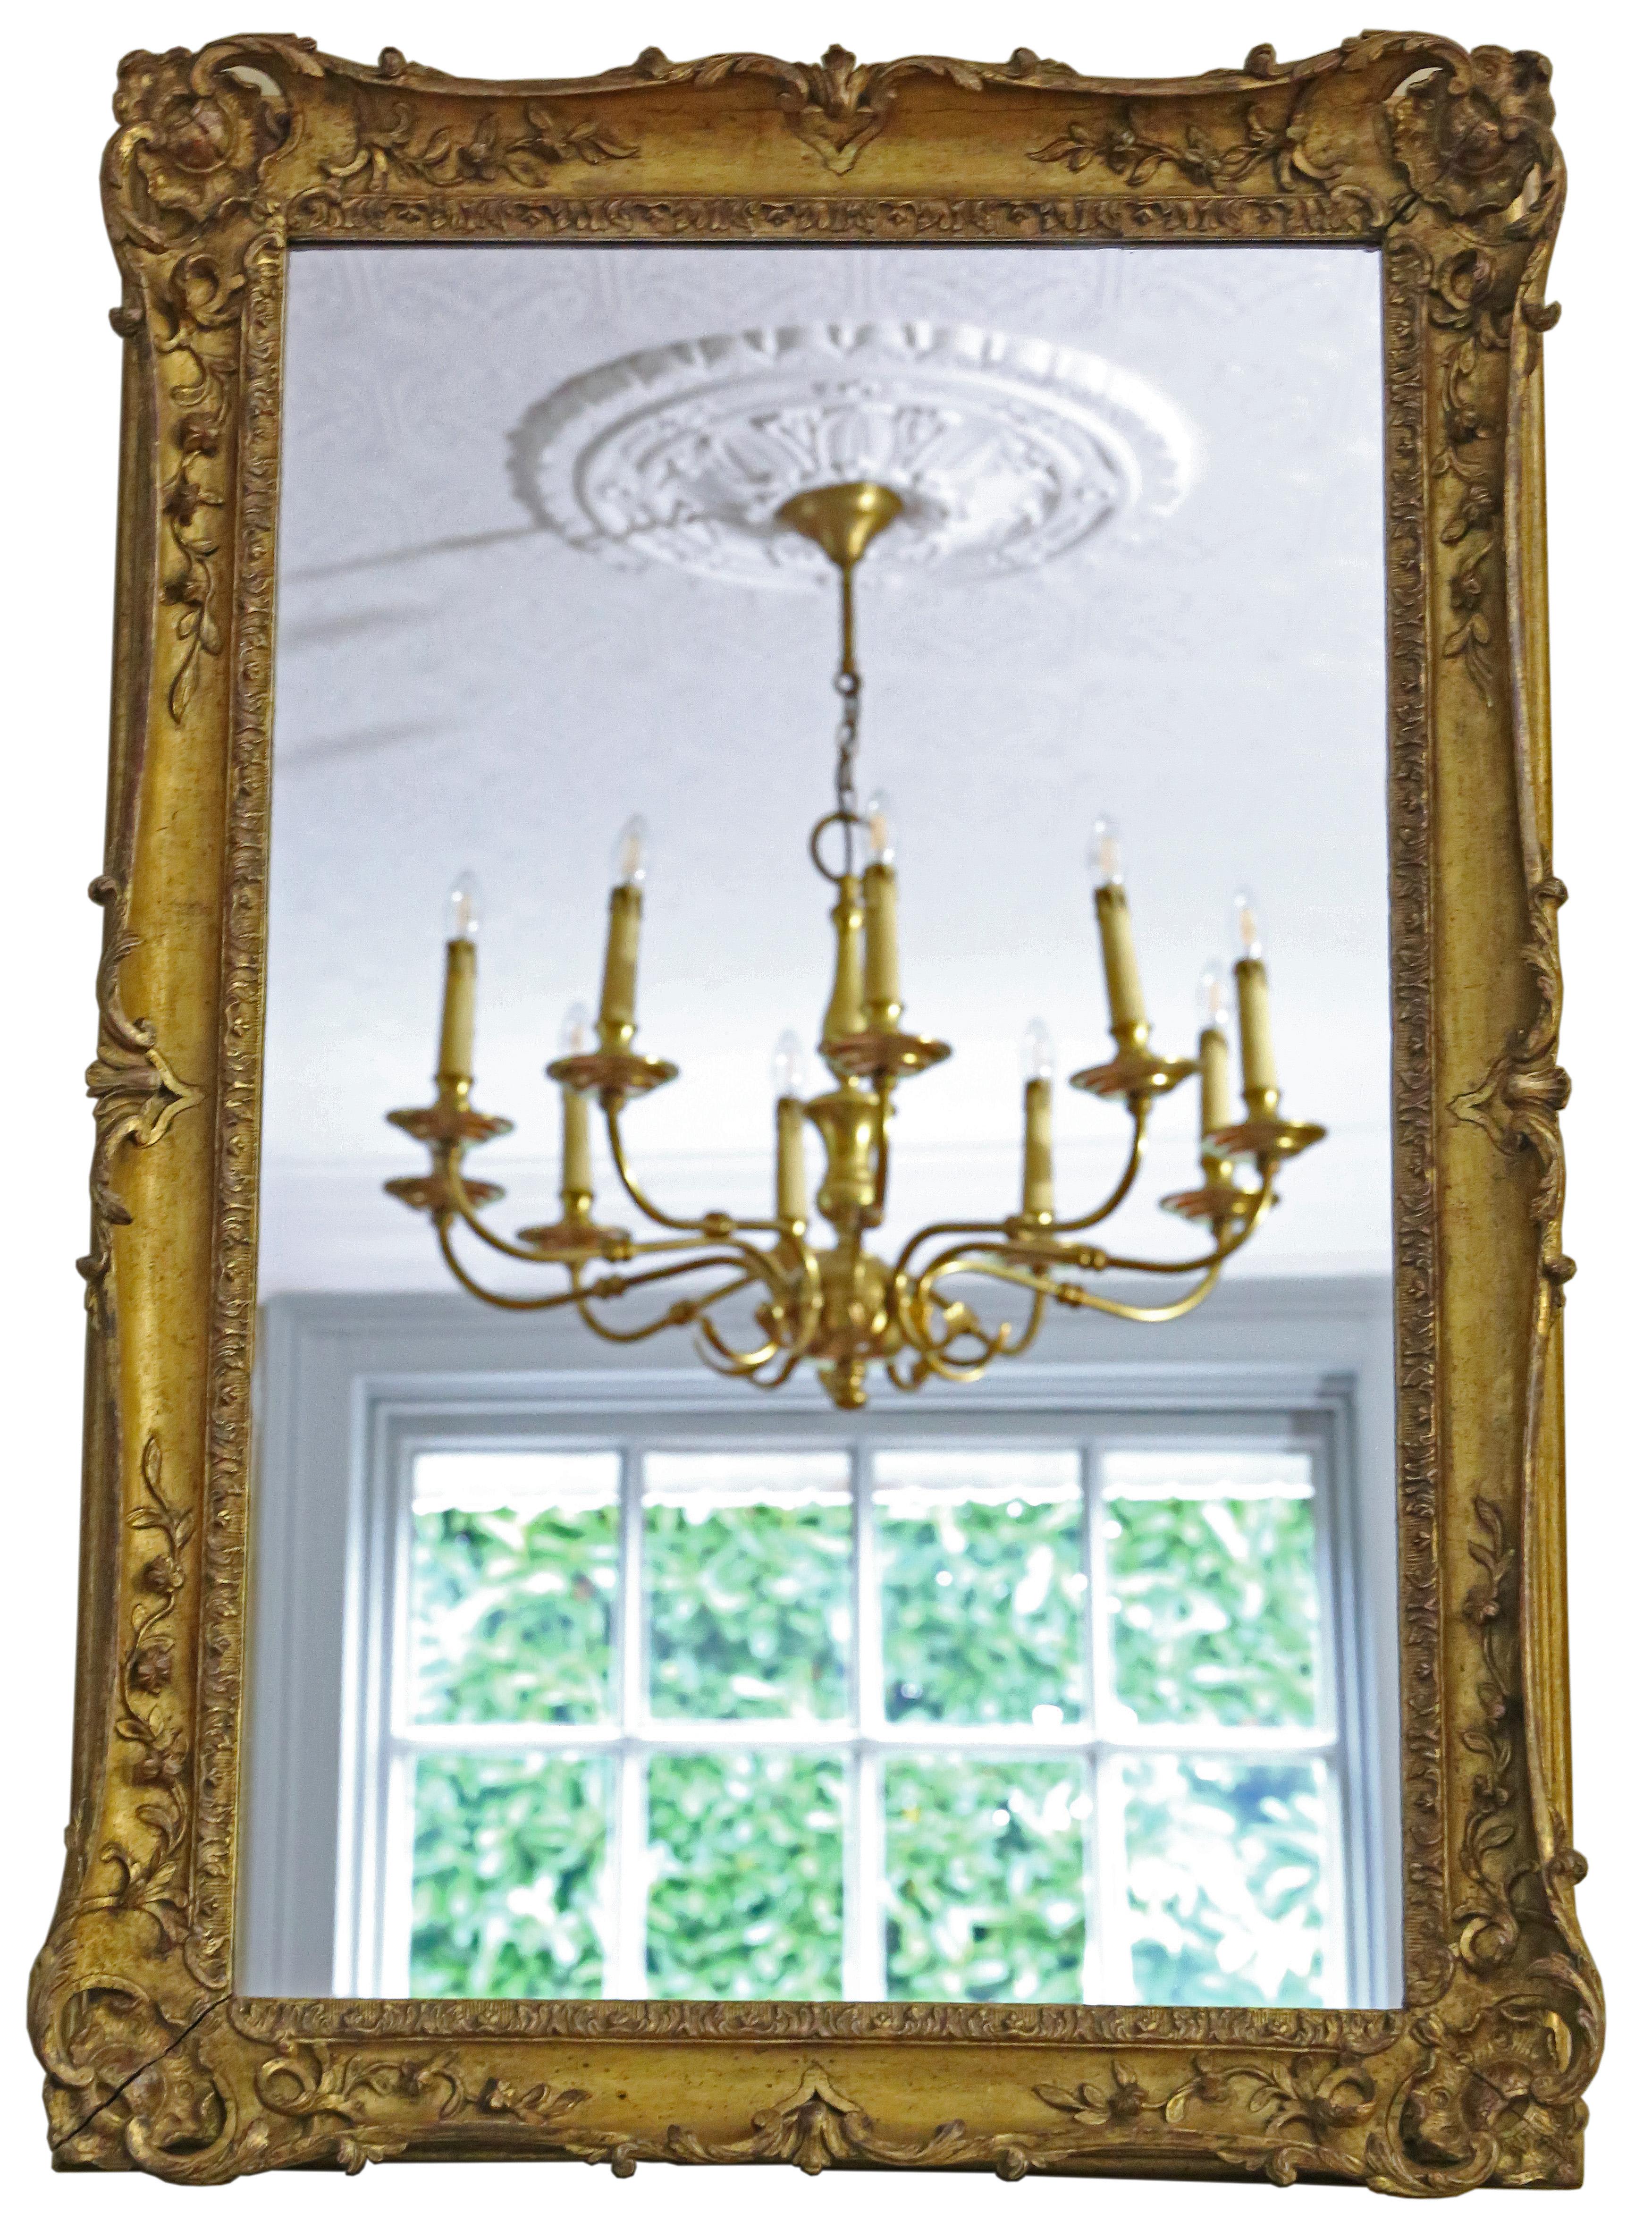 Miroir mural ancien en bois doré de grande qualité, 19ème siècle. Le charme et l'élégance sont au rendez-vous.

Il s'agit d'un miroir très rare. Un peu différent et tout à fait spécial.

Une trouvaille impressionnante, qui serait magnifique au bon